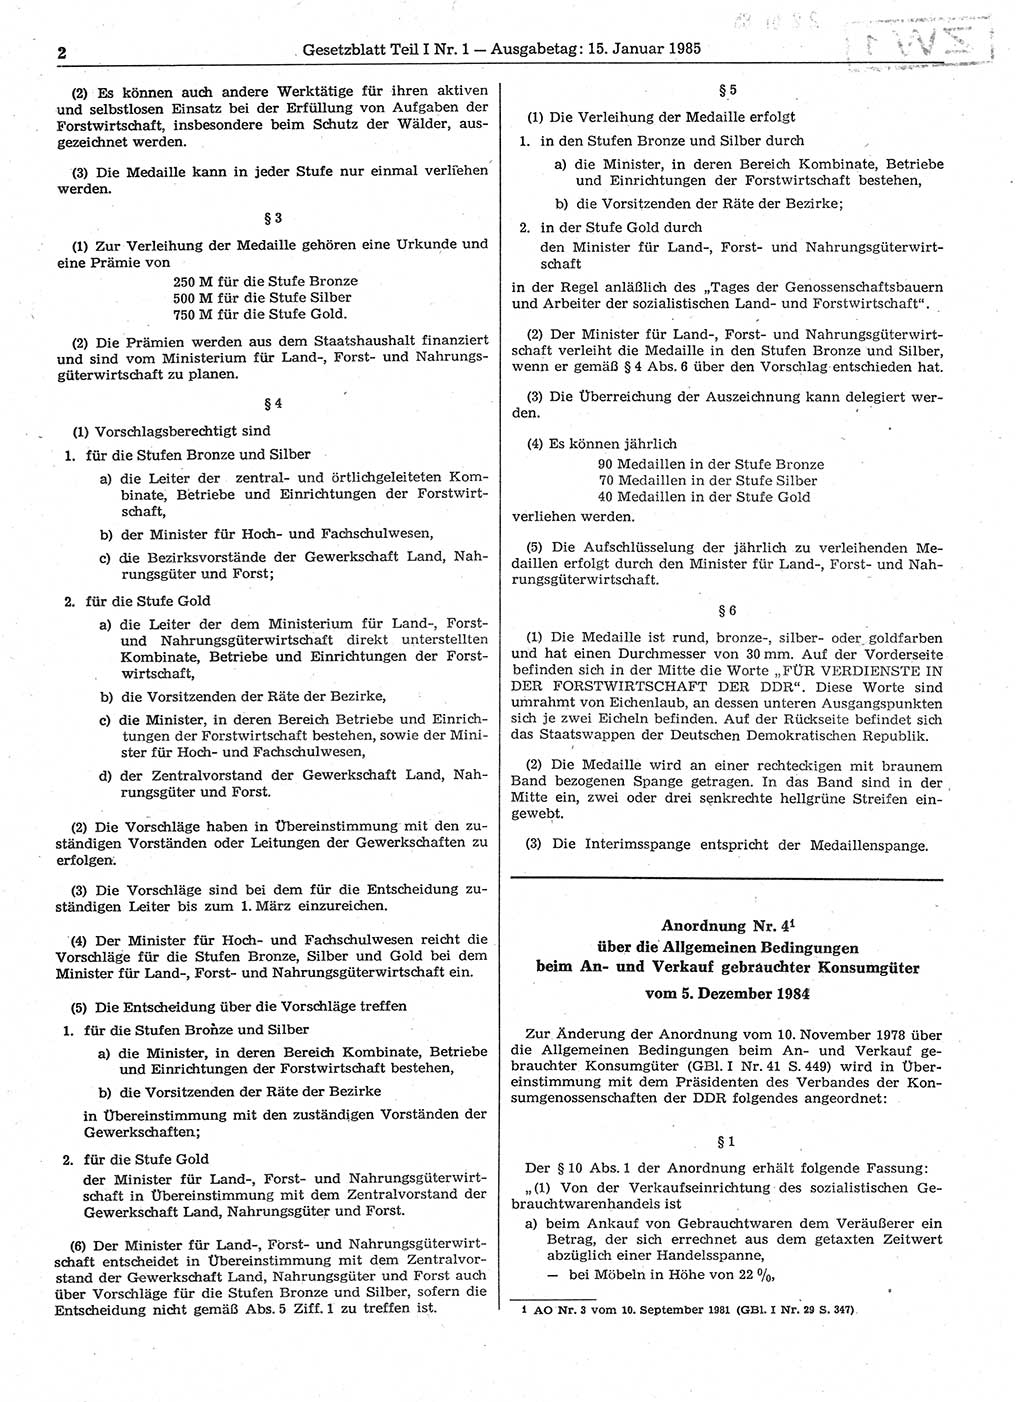 Gesetzblatt (GBl.) der Deutschen Demokratischen Republik (DDR) Teil Ⅰ 1985, Seite 2 (GBl. DDR Ⅰ 1985, S. 2)